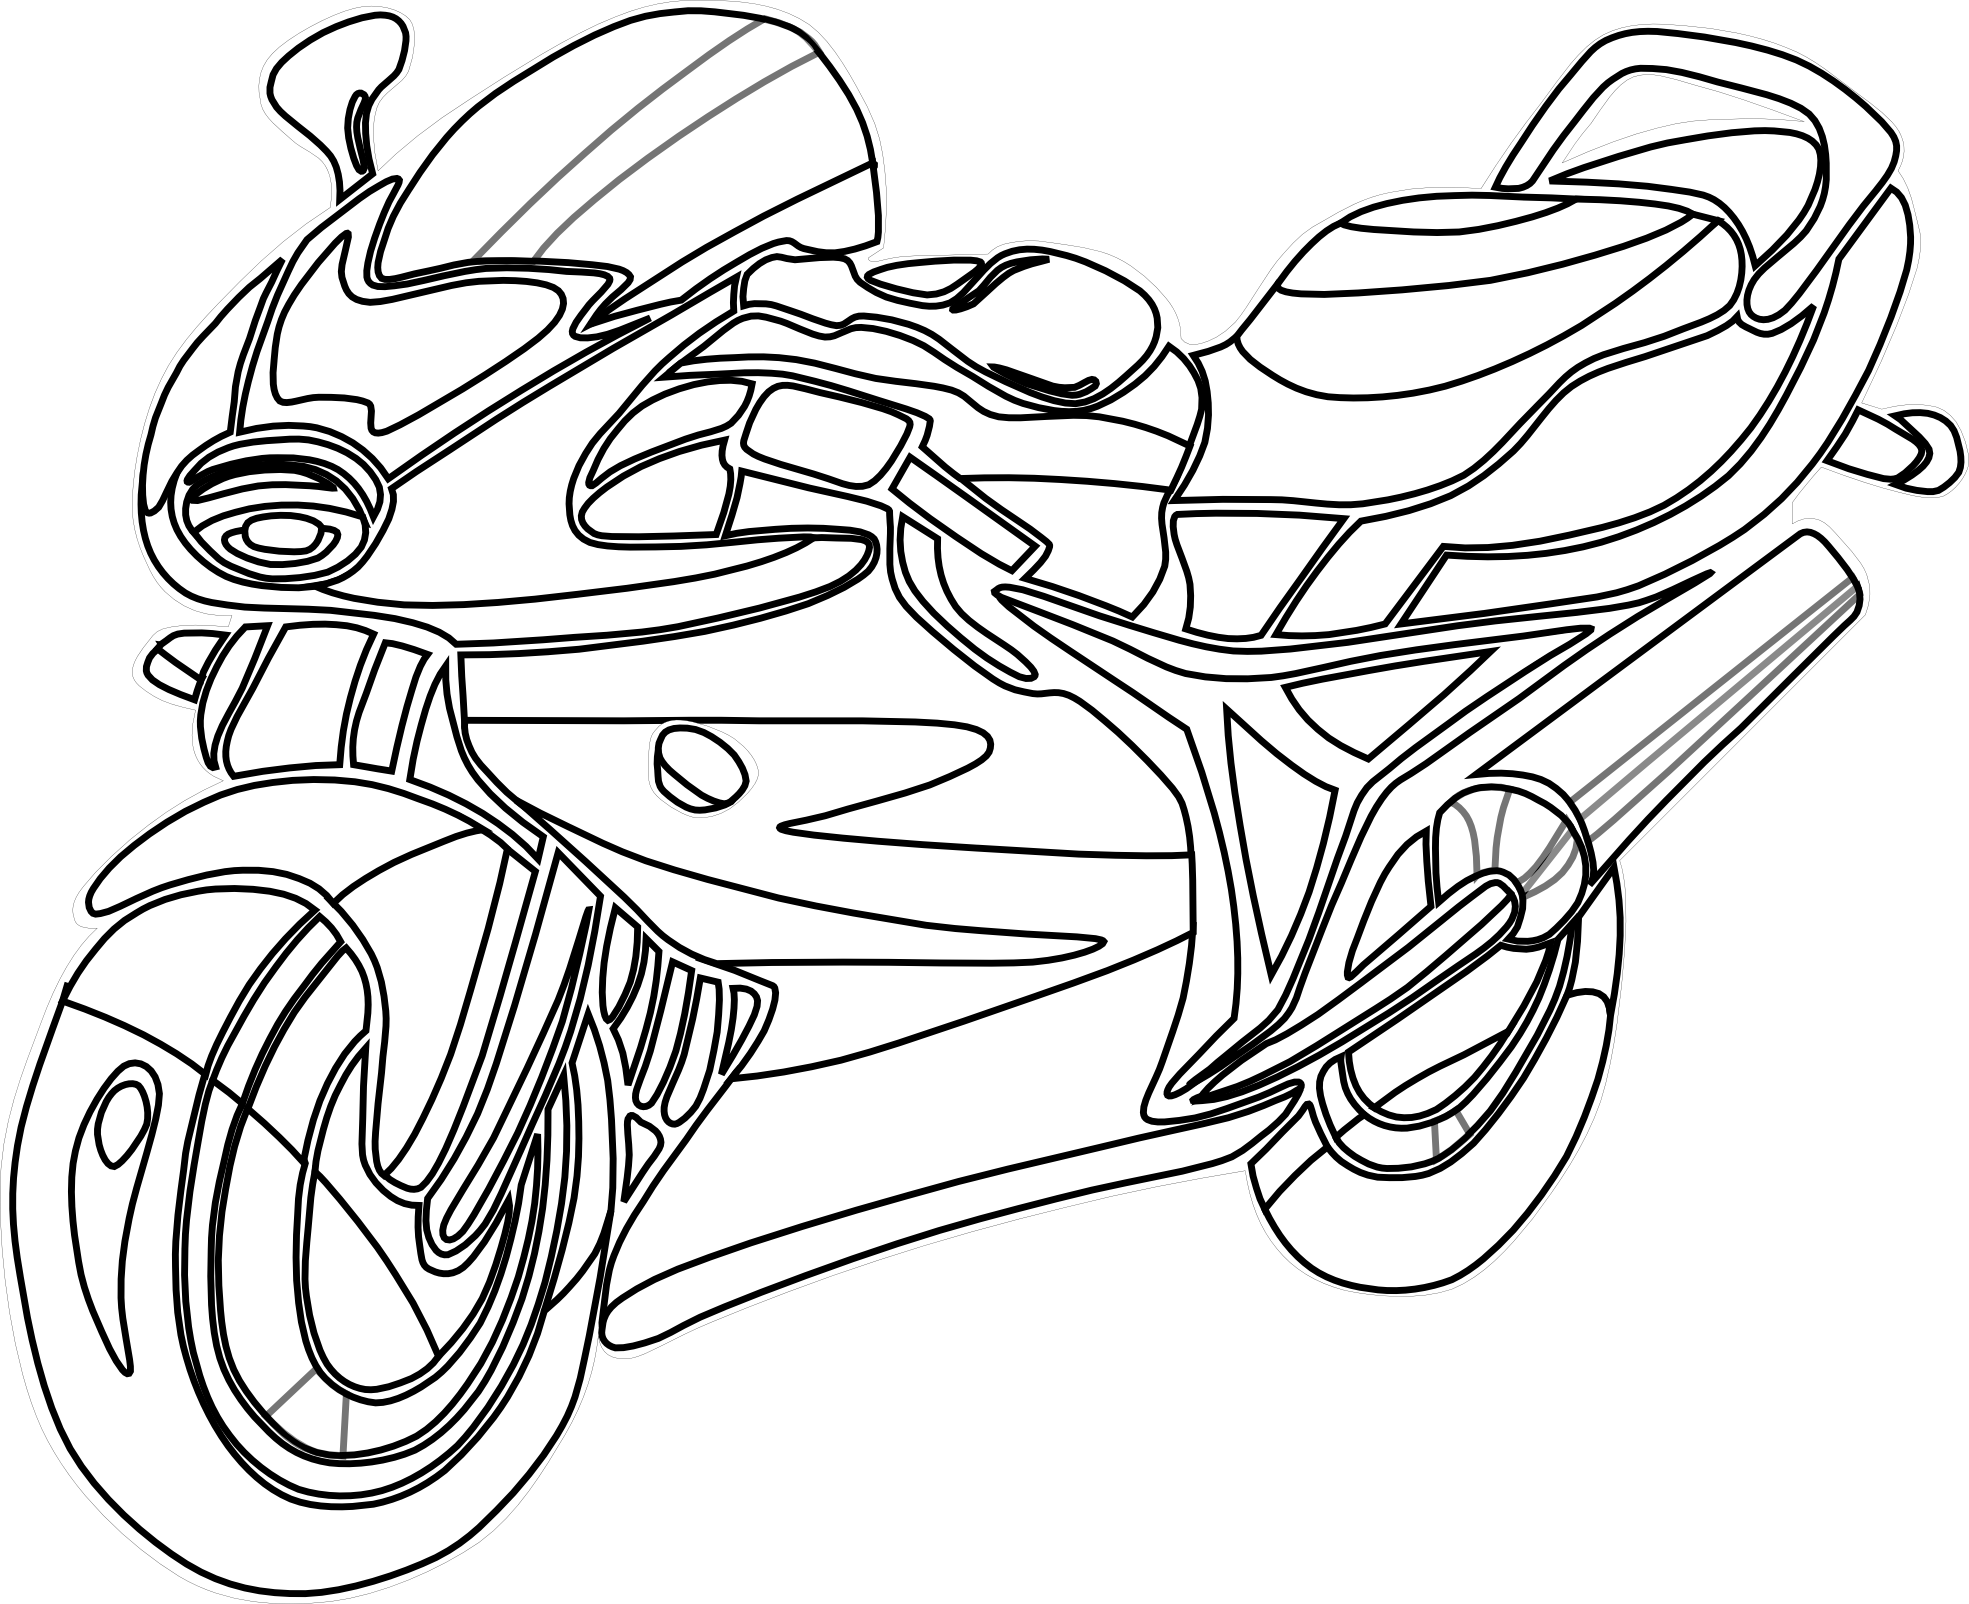 Motorcycle drawings clip art